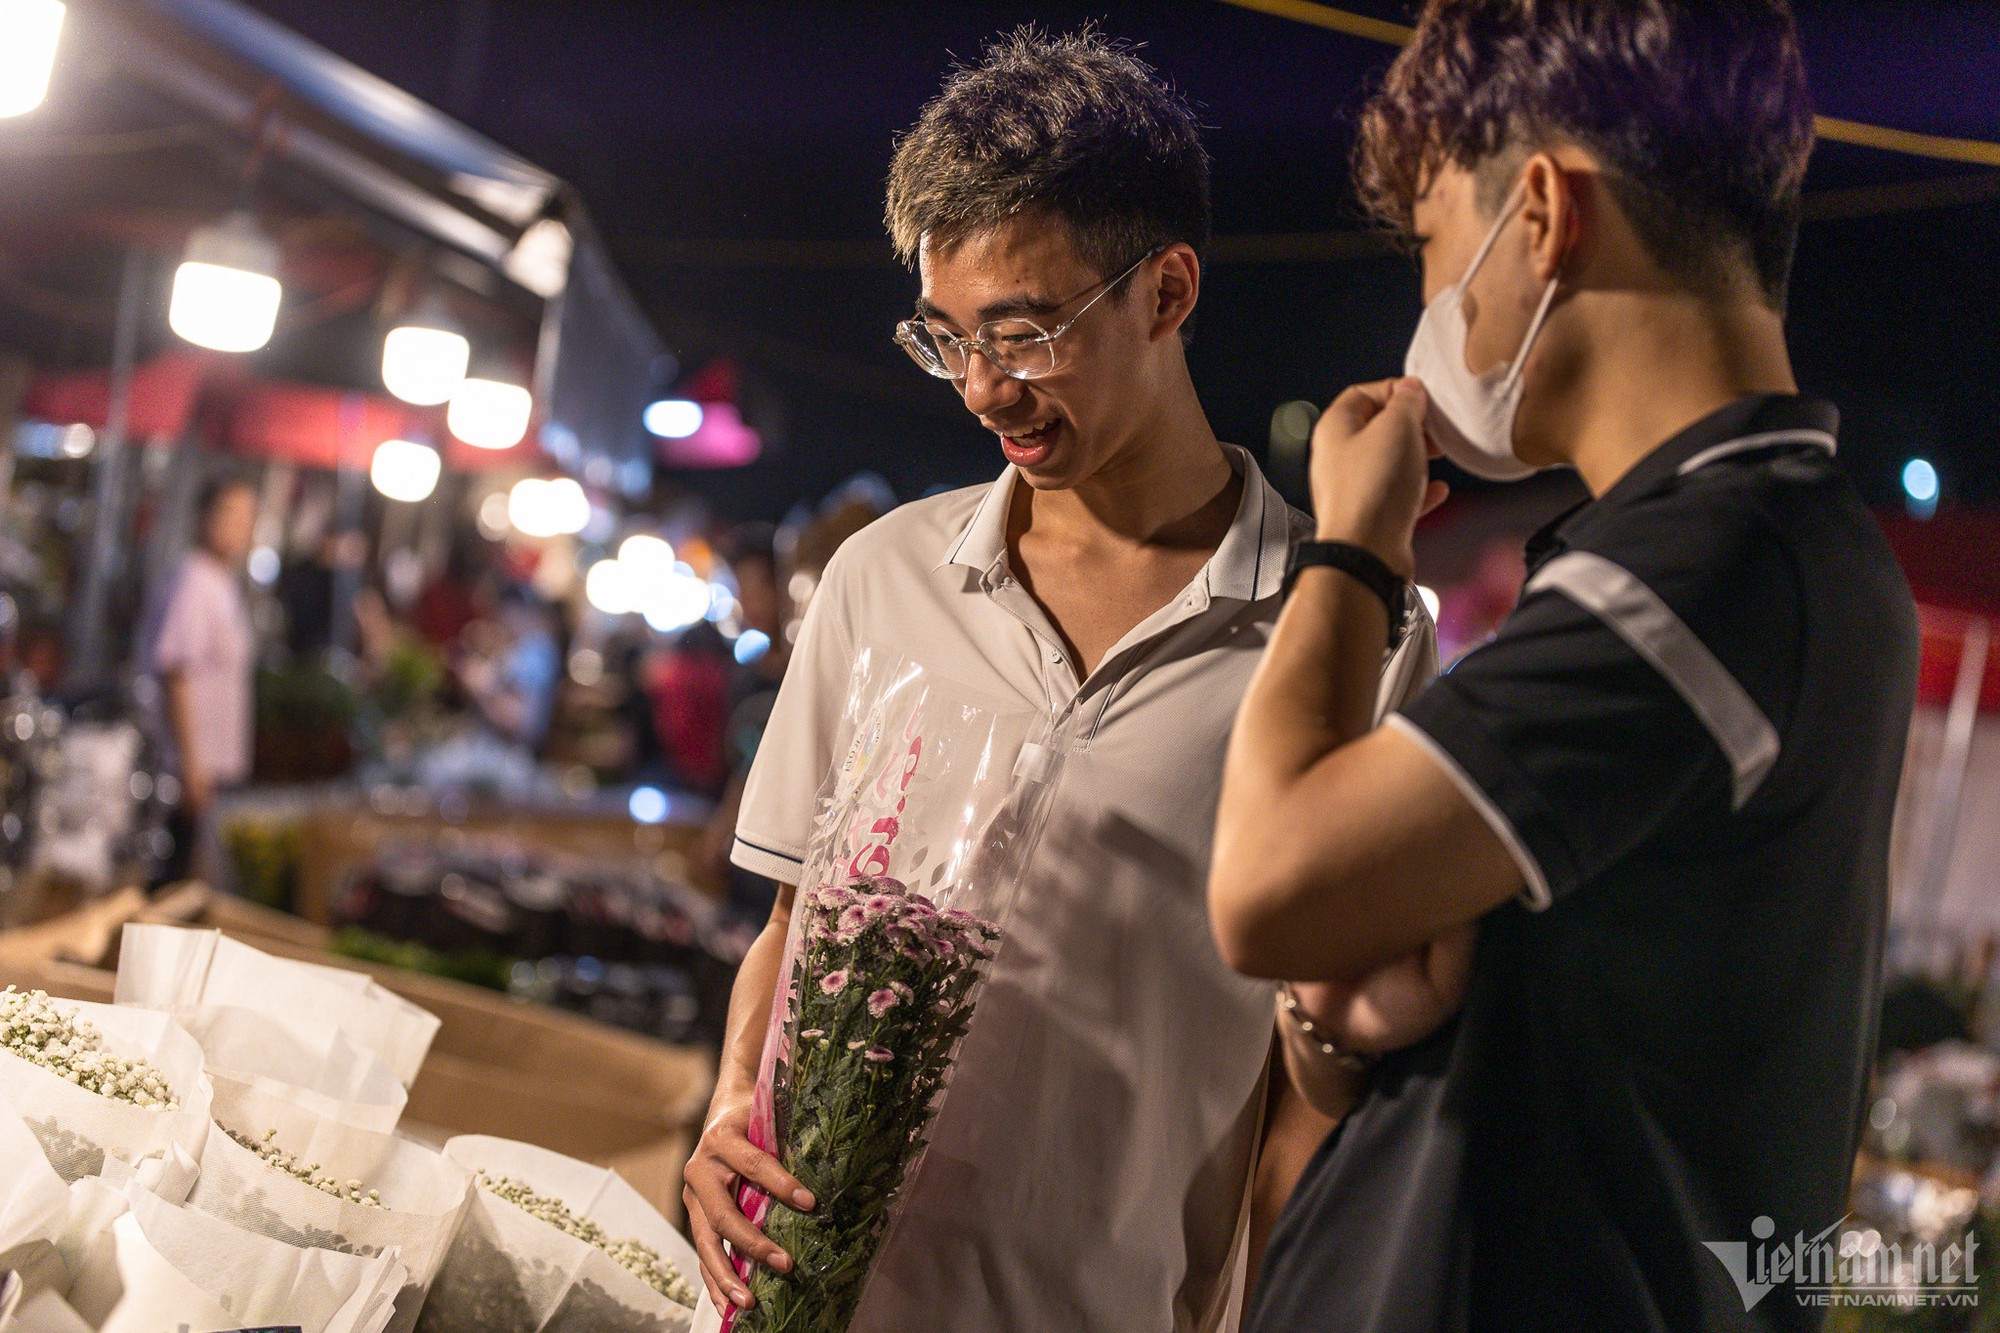 Người dân ùn ùn đổ về chợ hoa đêm lớn nhất Hà Nội - Ảnh 8.